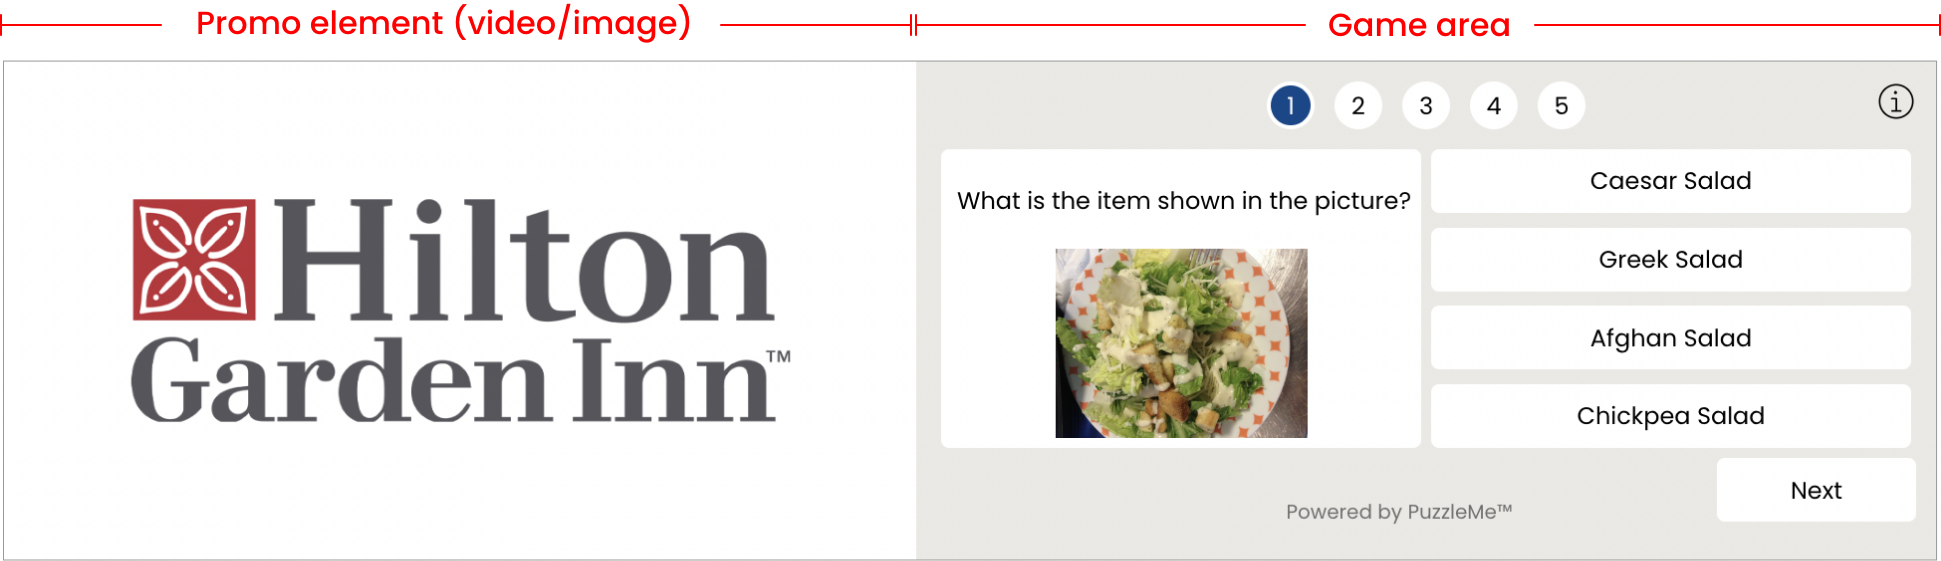 Quiz Interactive Ad for Hilton Garden Inn